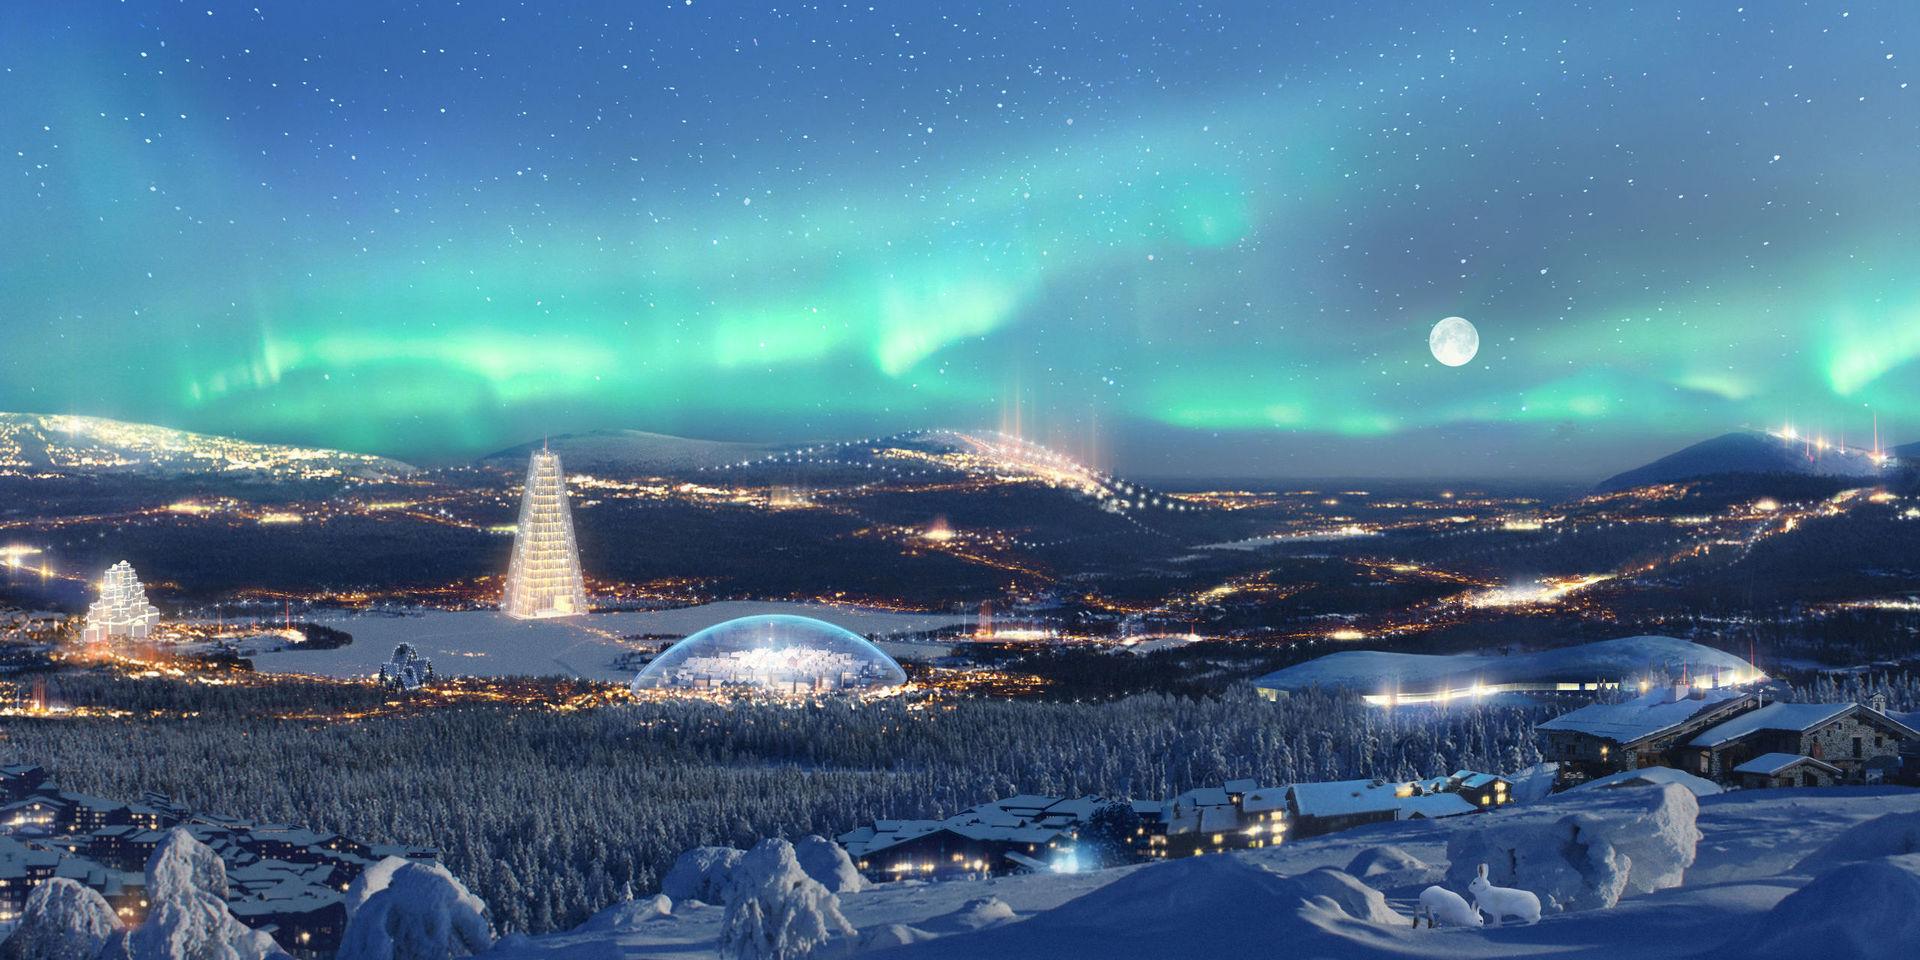 Tomterepubliken utanför Rovaniemi ska locka besökare med sitt julgranshotell och jättelika snöglob.